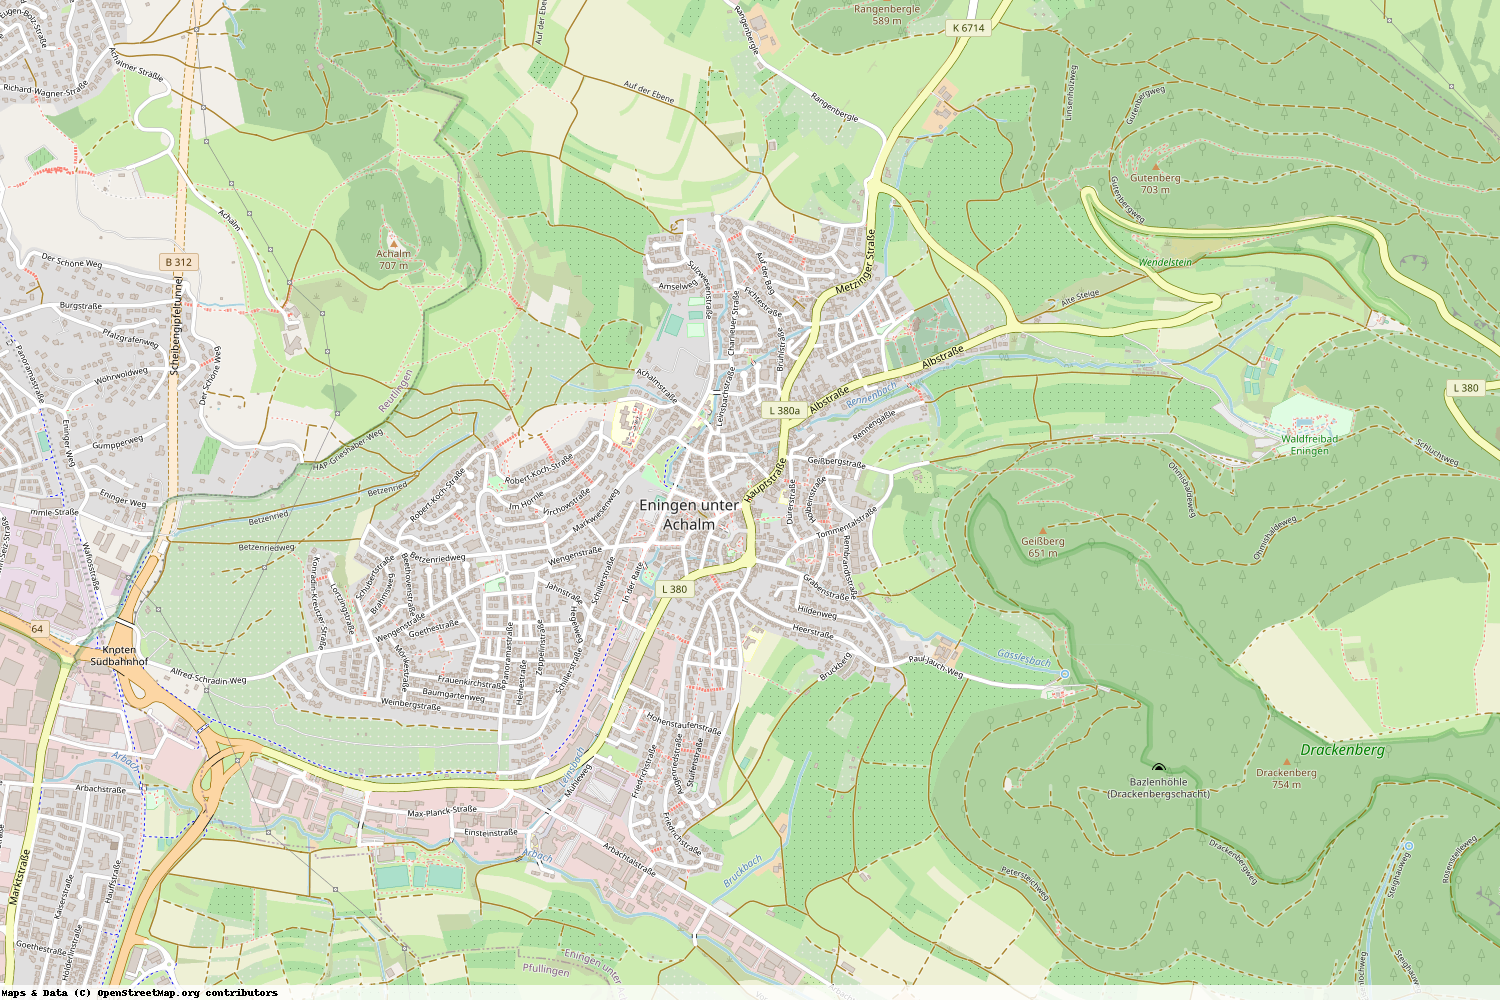 Ist gerade Stromausfall in Baden-Württemberg - Reutlingen - Eningen unter Achalm?